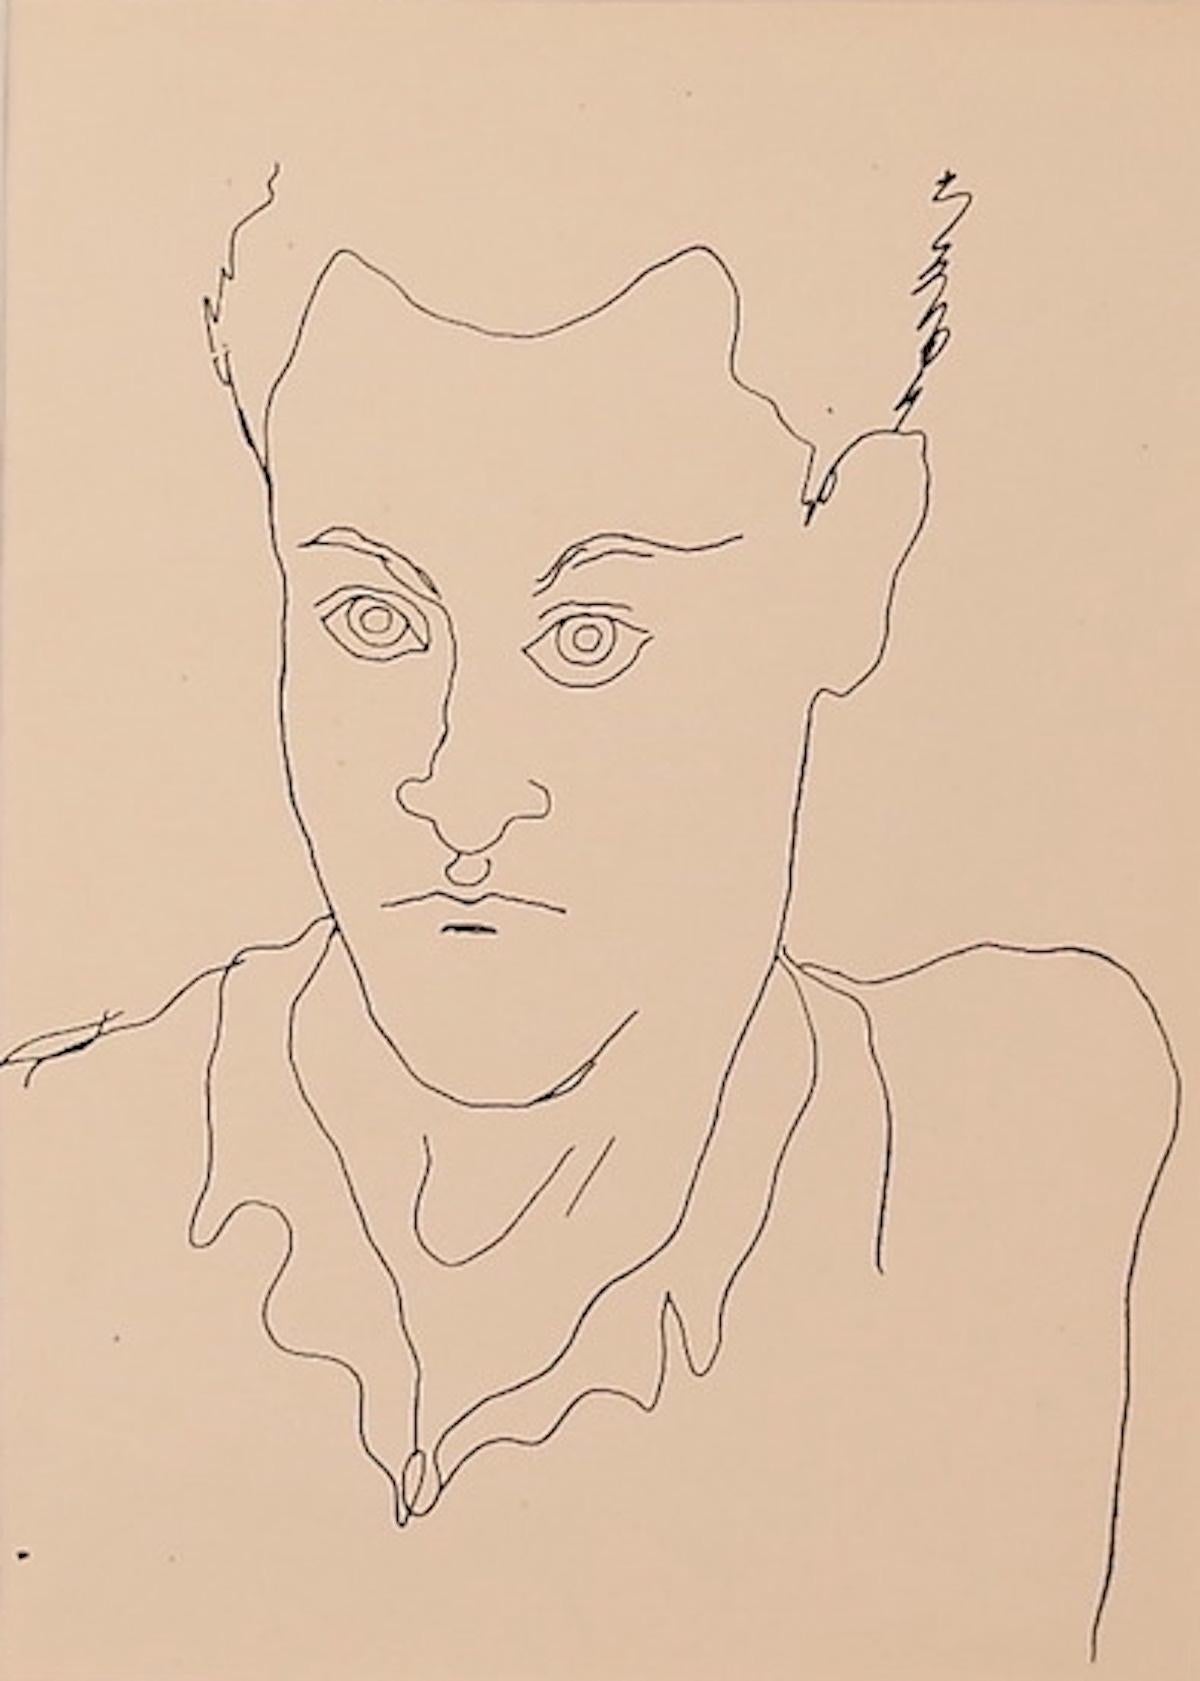 Young Boy ist eine Original-Fotolithografie von Jean Cocteau (1889 -1963) aus dem Jahr 1930.

Mit dem blauen Stempel der "Collezione Contessa Anna Labtitia Pecci" auf der Rückseite.

Ausgezeichnete Bedingungen.

Inklusive Passepartout: 49 x 34